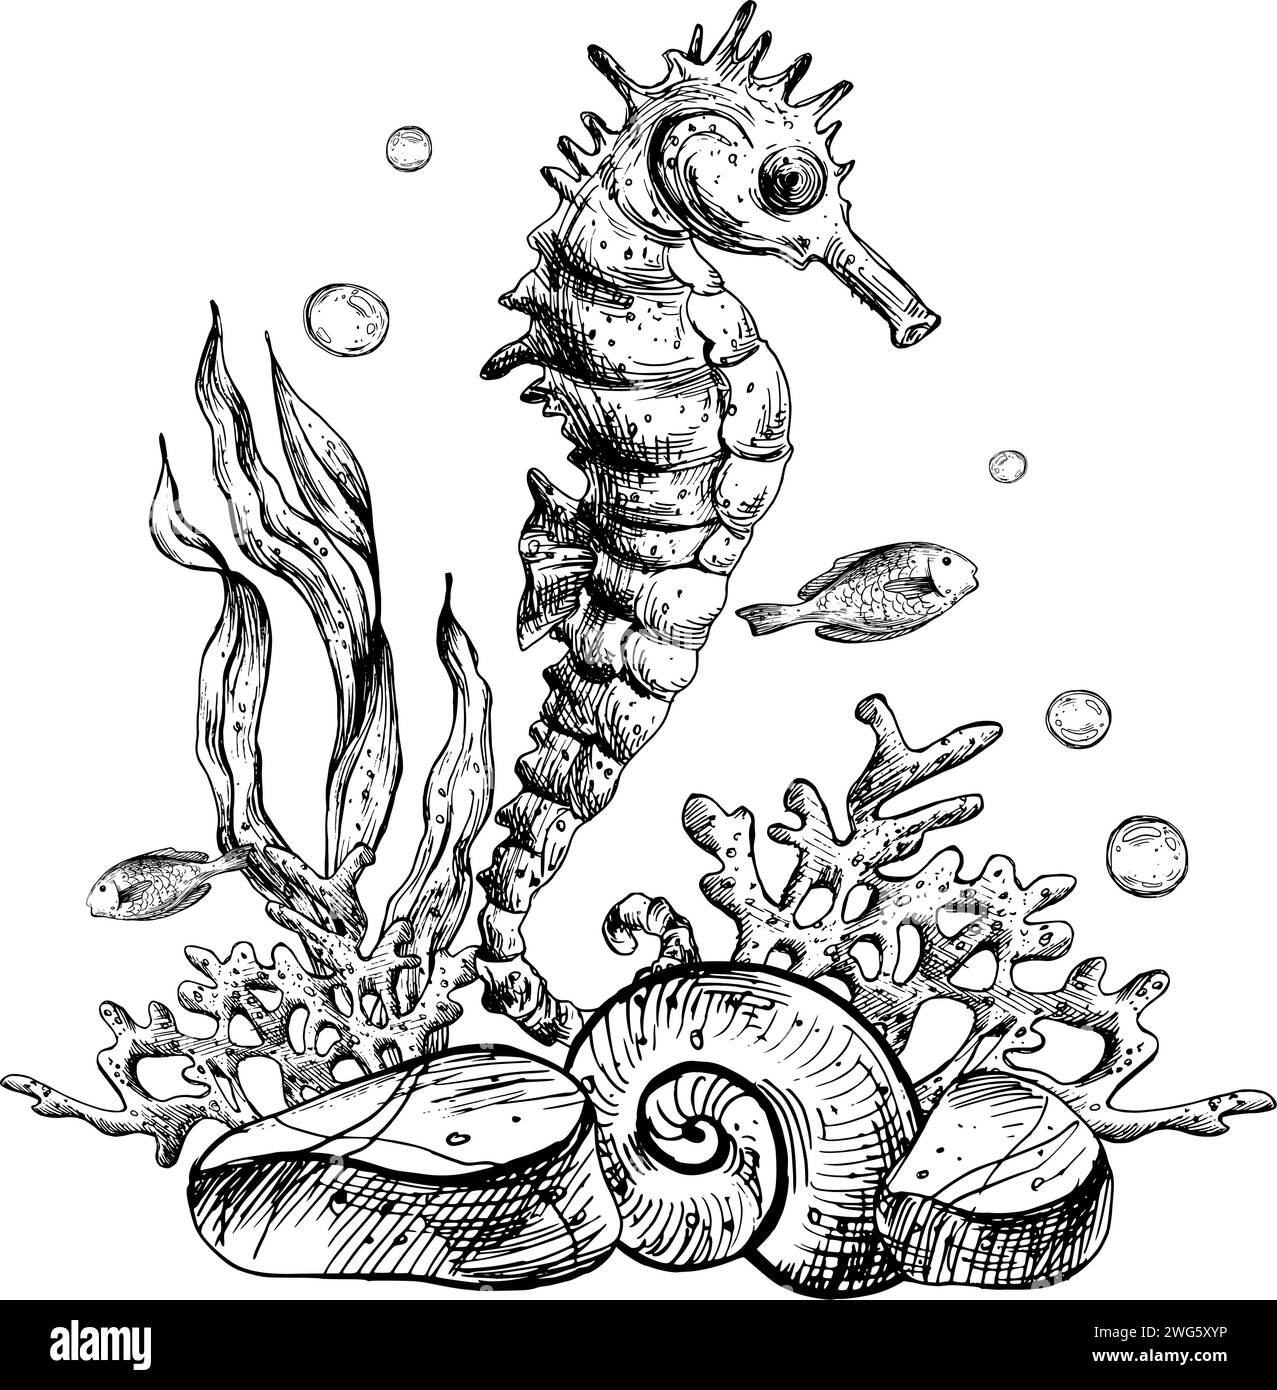 Unterwasserwelt Clipart mit Meerestieren Seepferdchen, Seesternen, Muscheln, Korallen und Algen. Grafische Abbildung, handgezeichnet mit schwarzer Tinte. Zusammensetzung EPS Stock Vektor